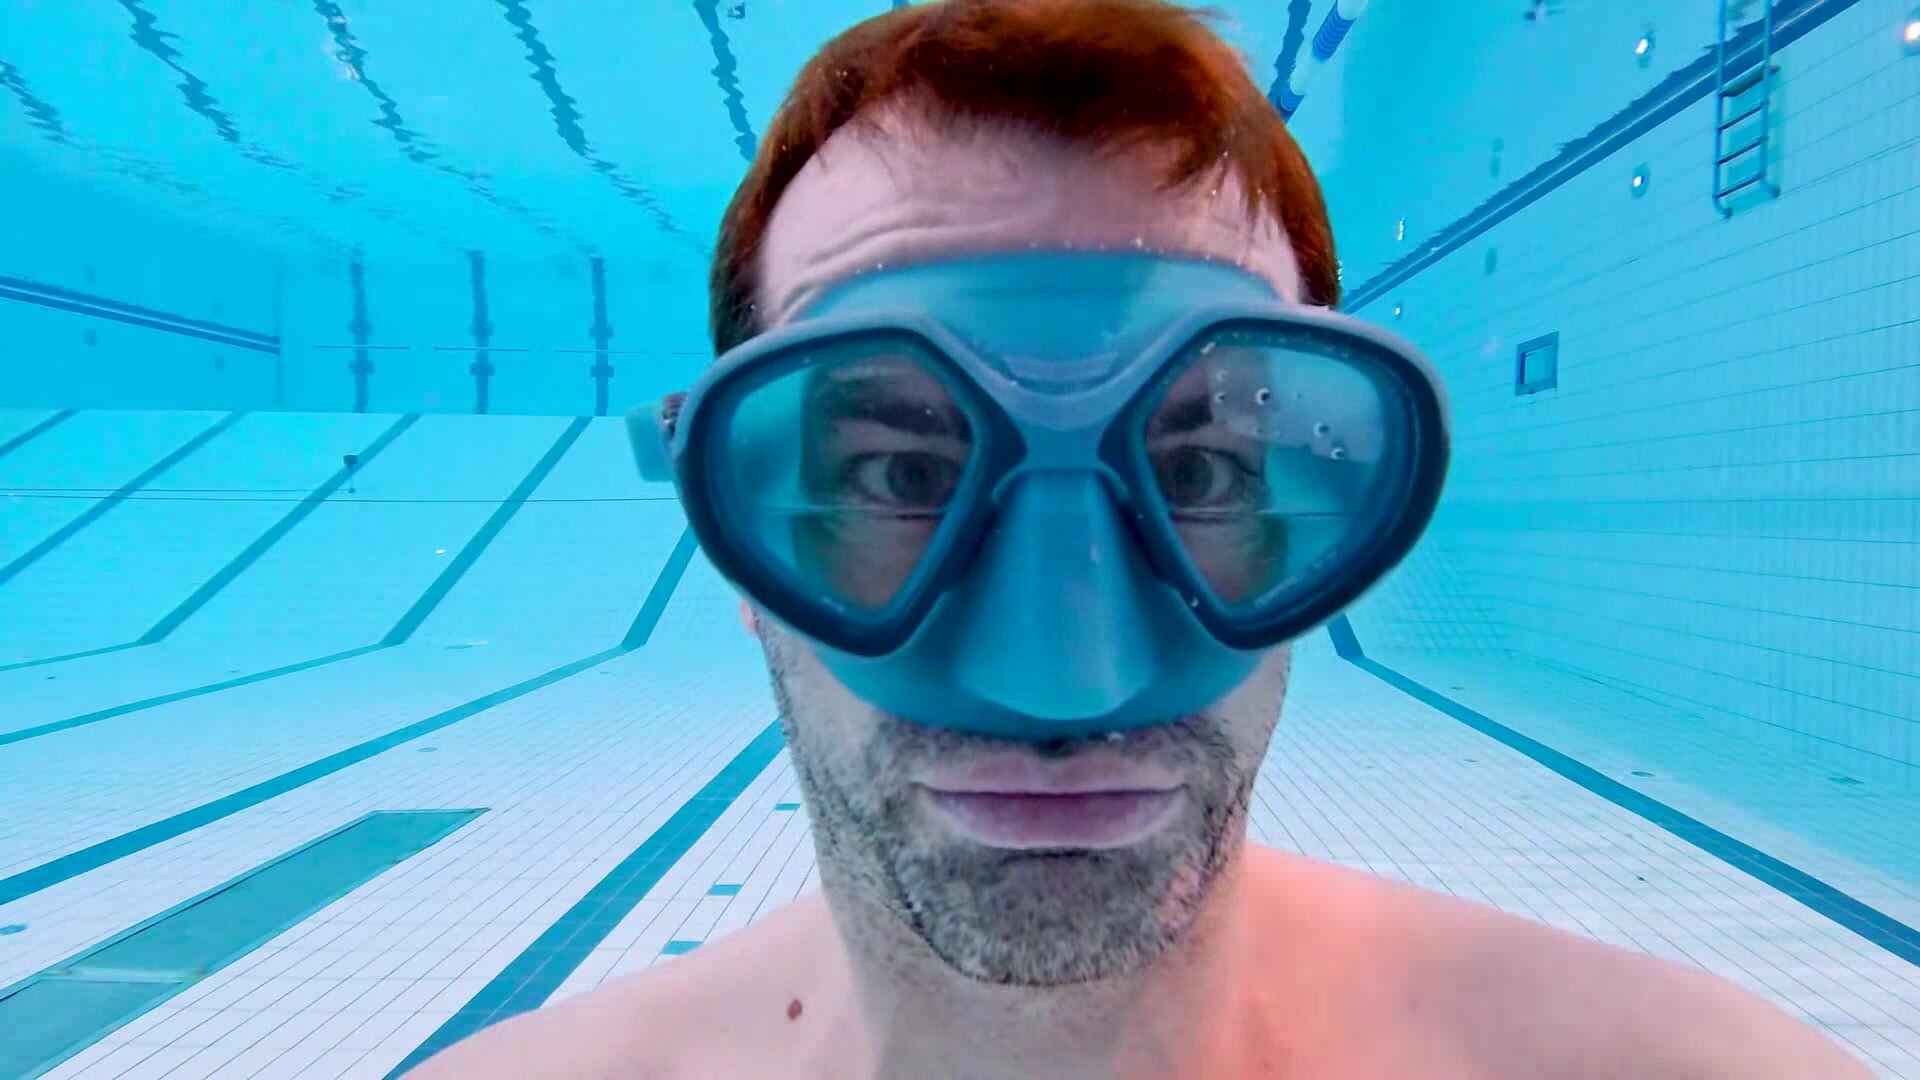 Christian breatholding masked underwater